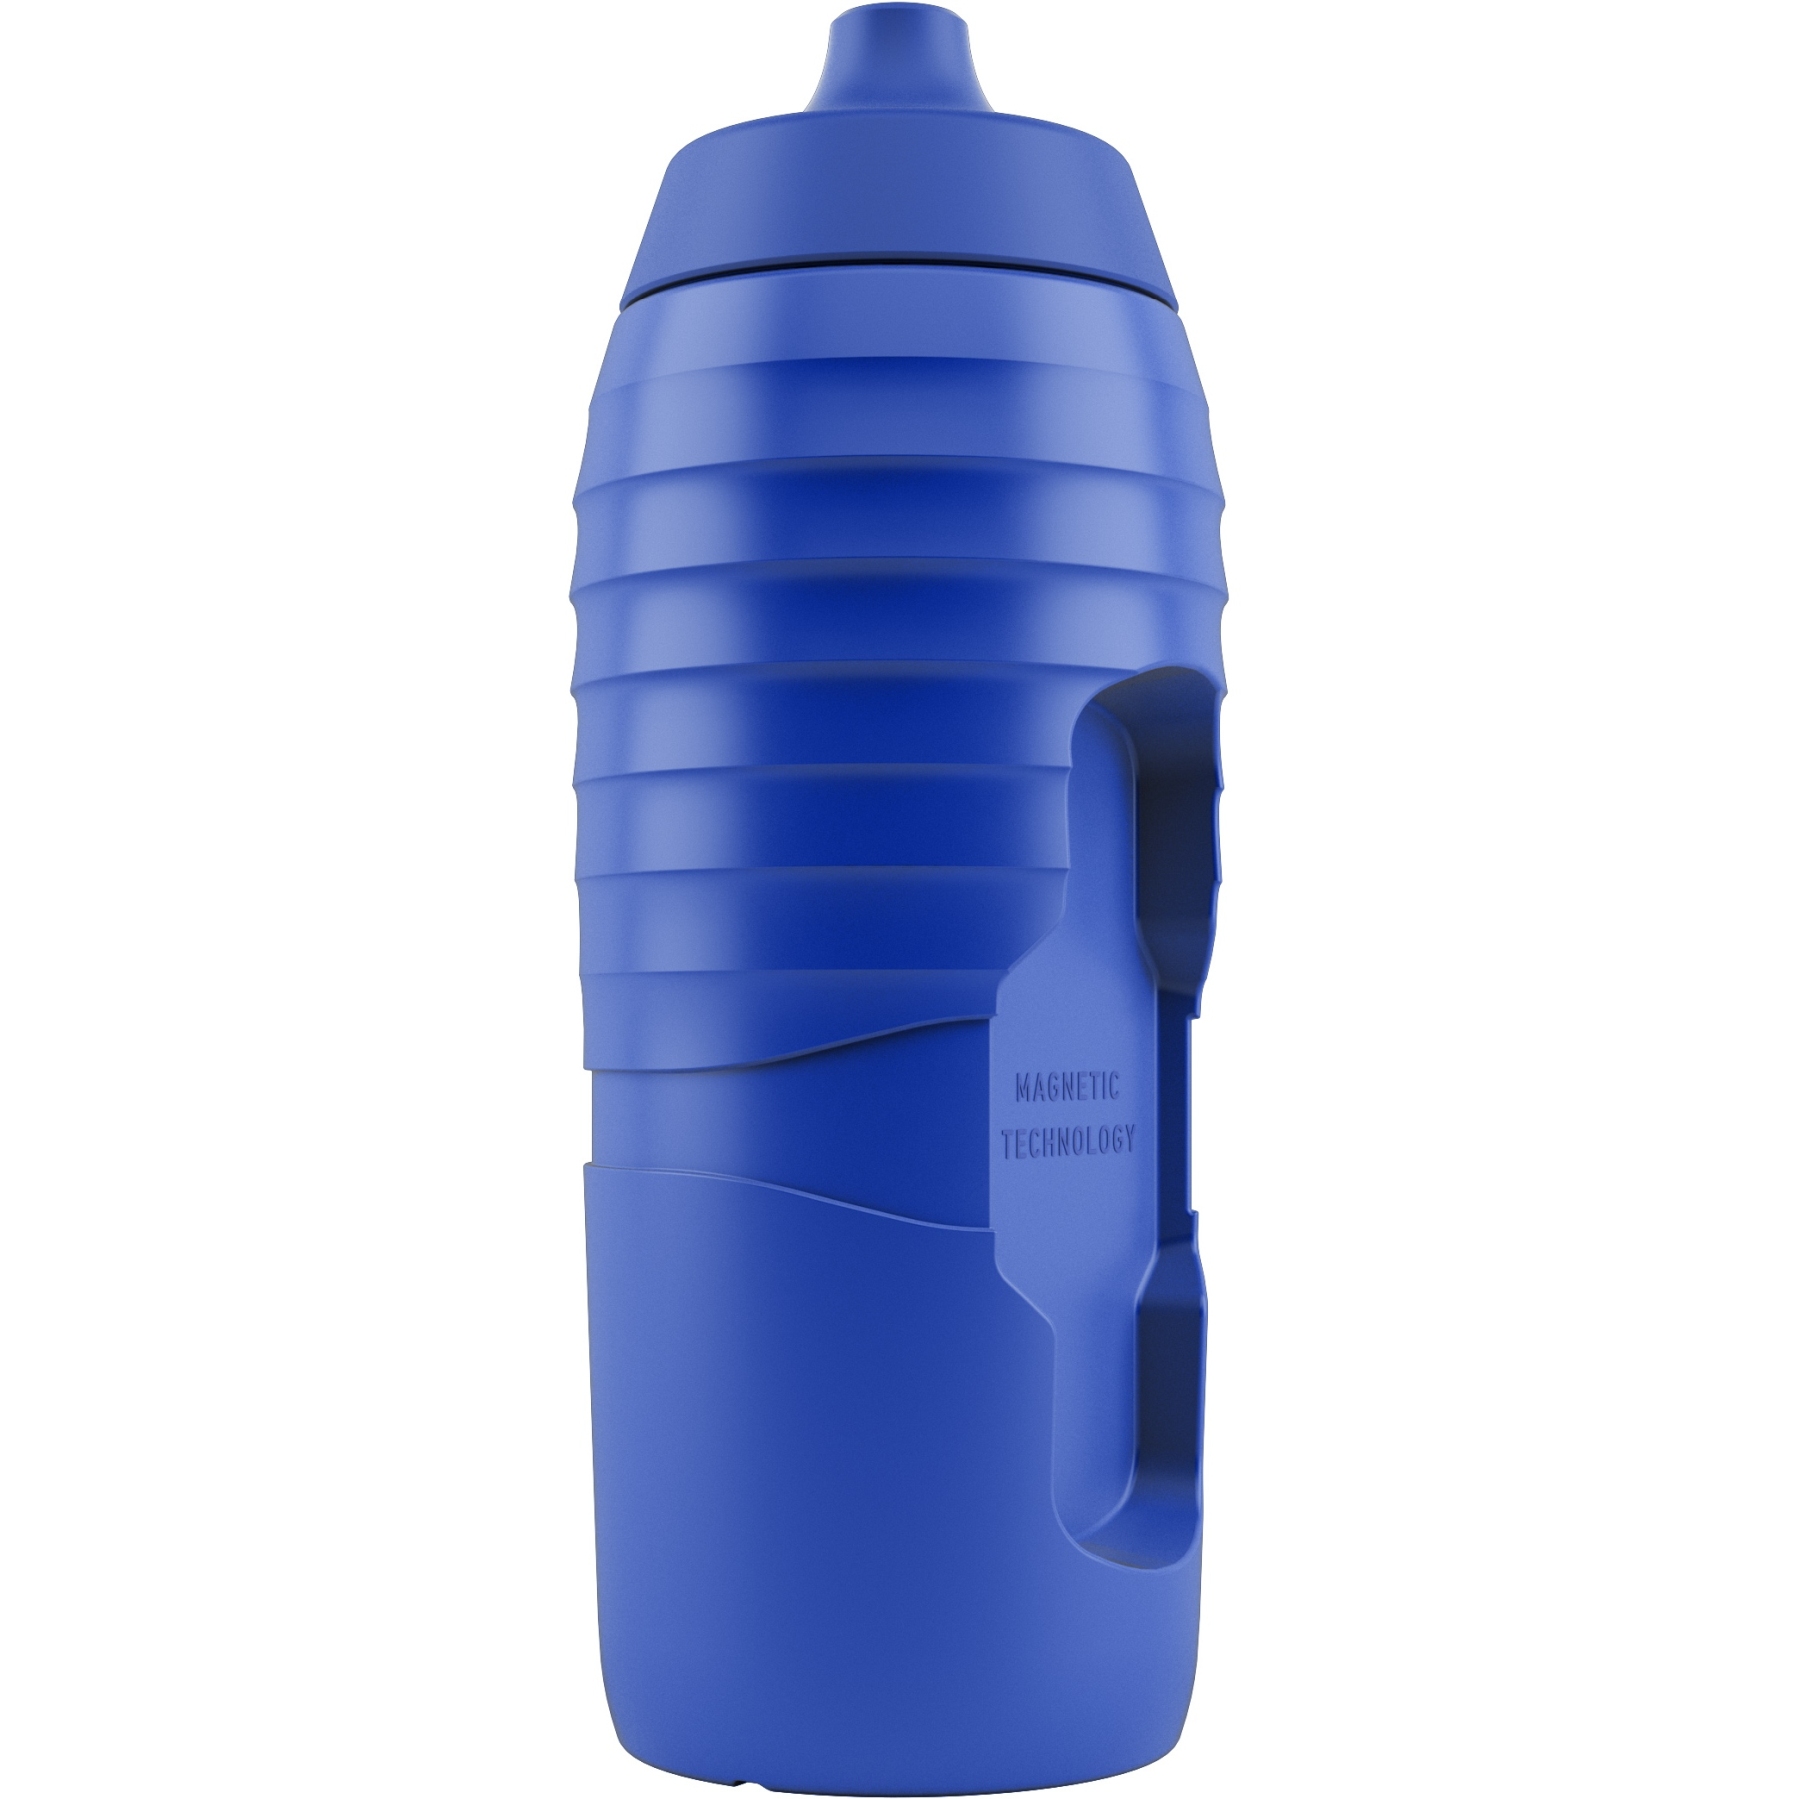 Produktbild von Fidlock x KEEGO Replacement Bottle Twist - Ersatz Trinkflasche 600 ml - blau